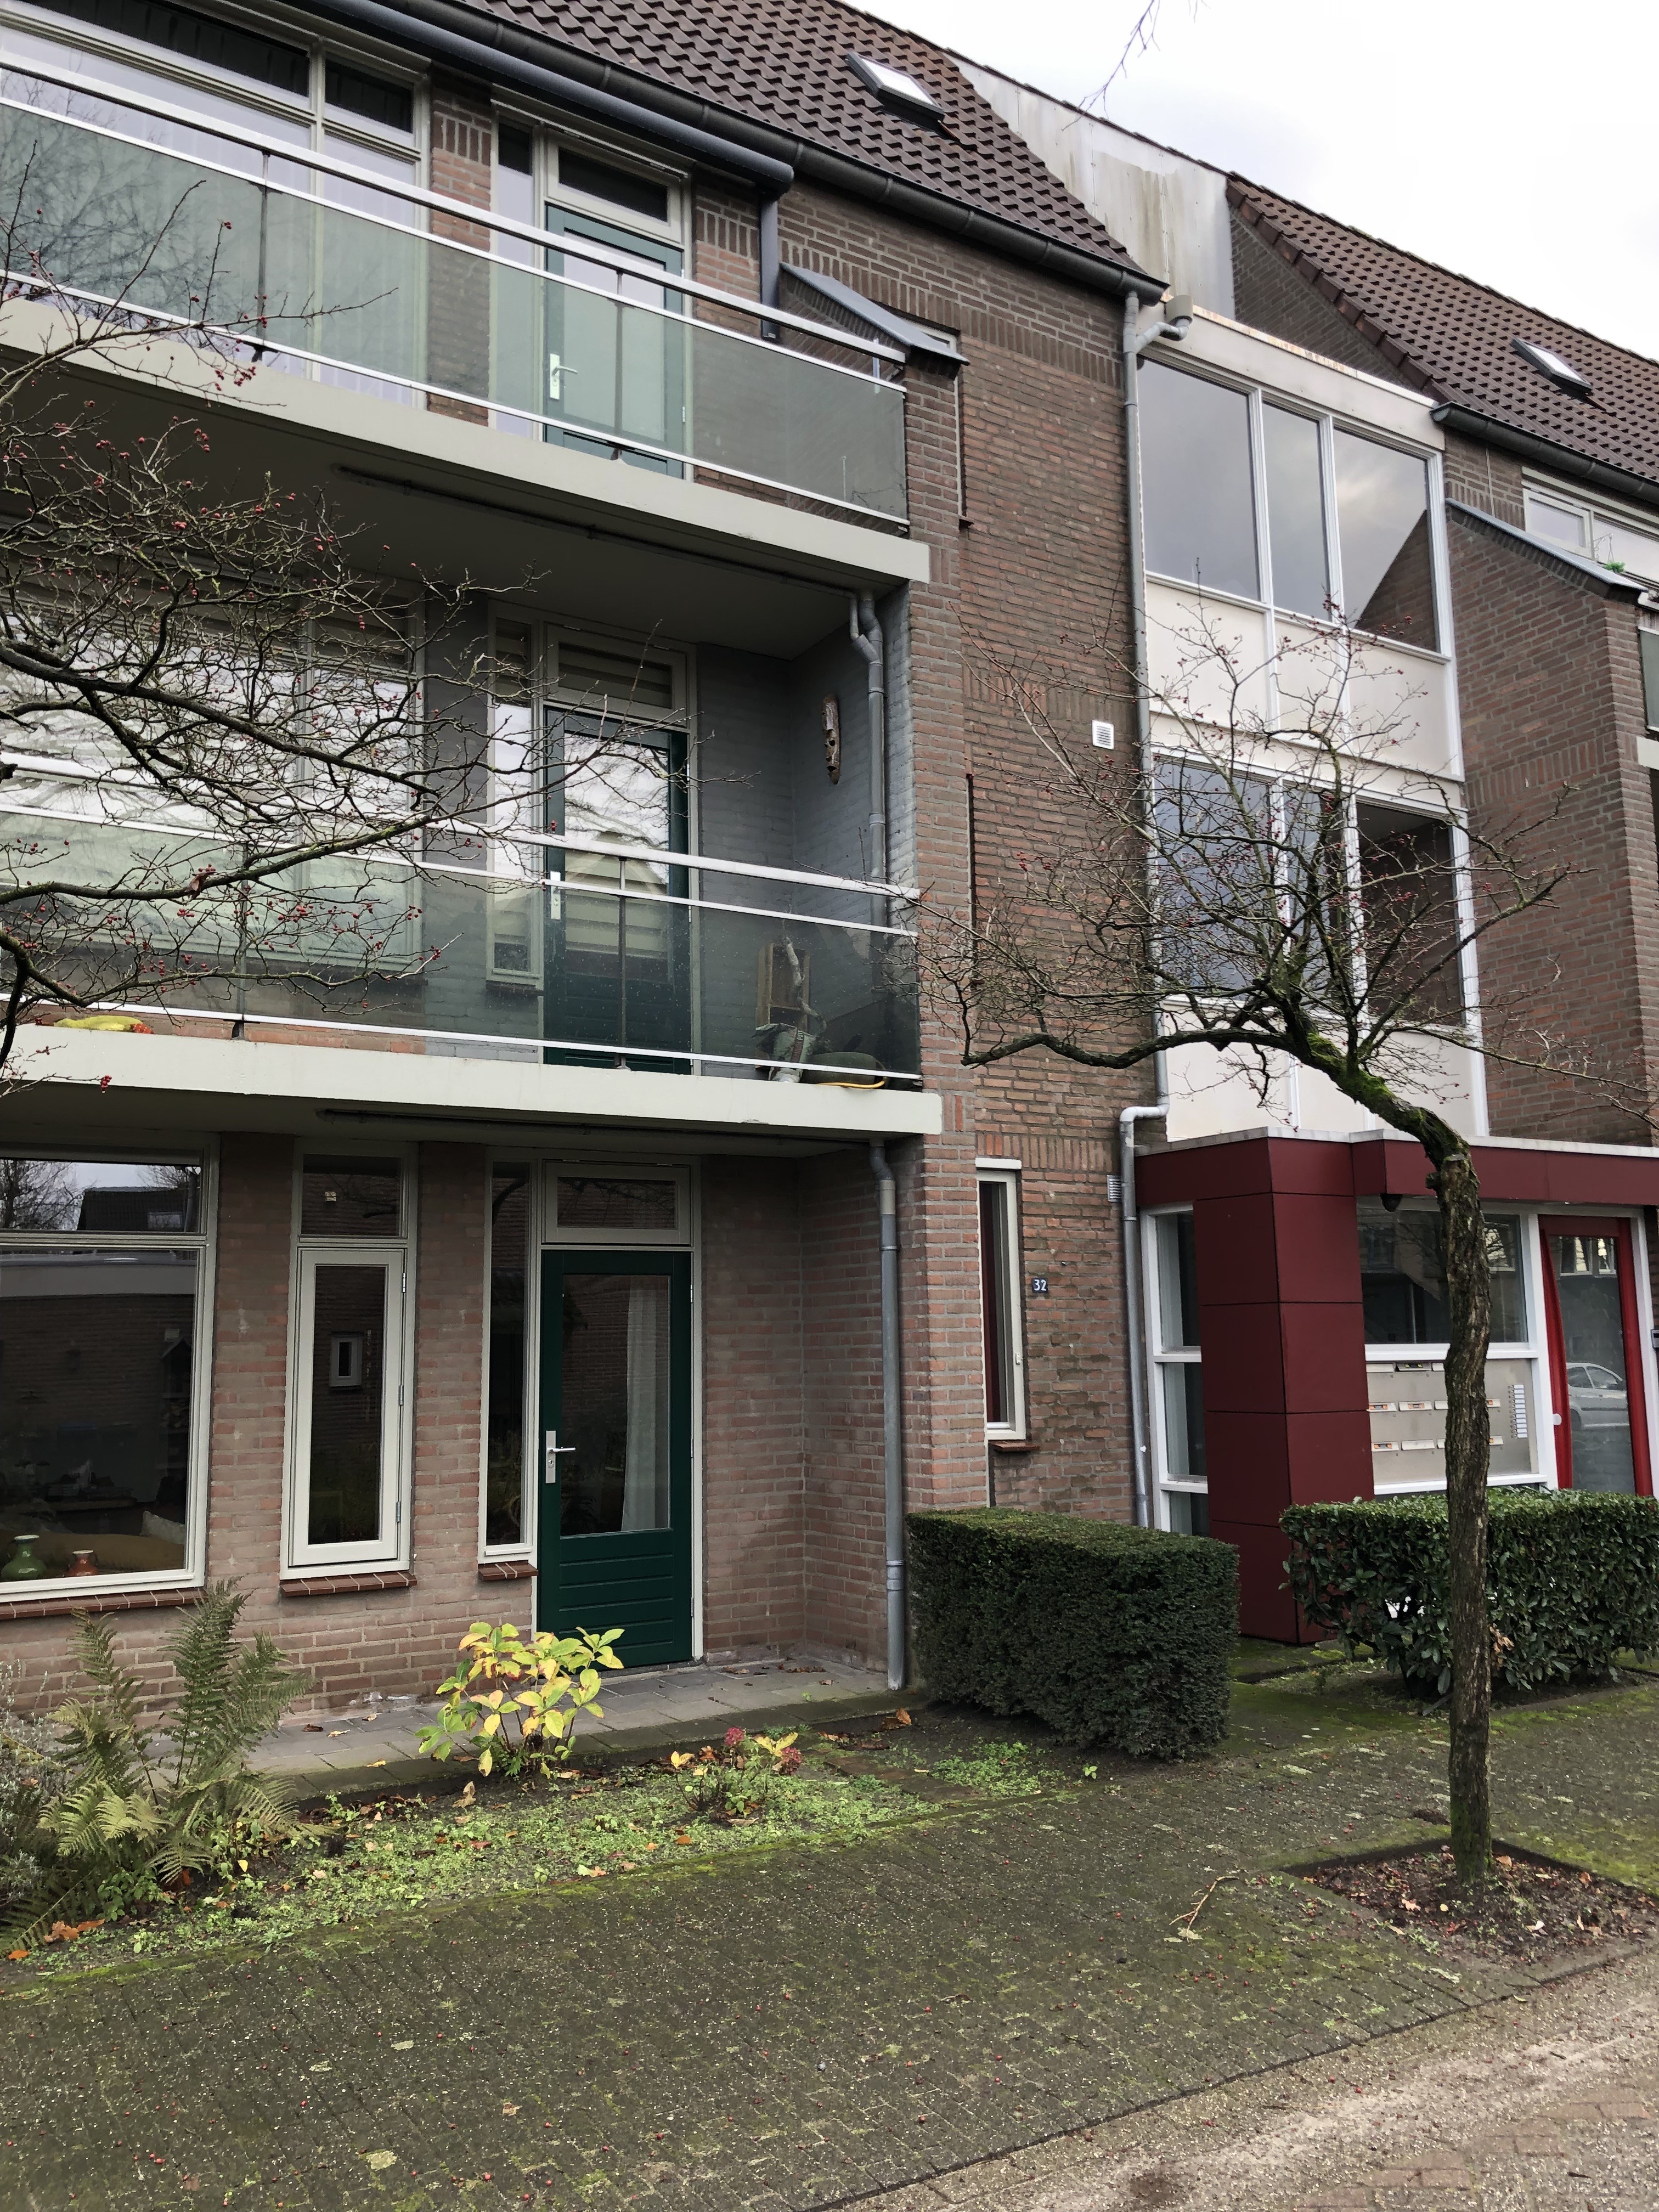 De Schouw 36, 5061 PW Oisterwijk, Nederland